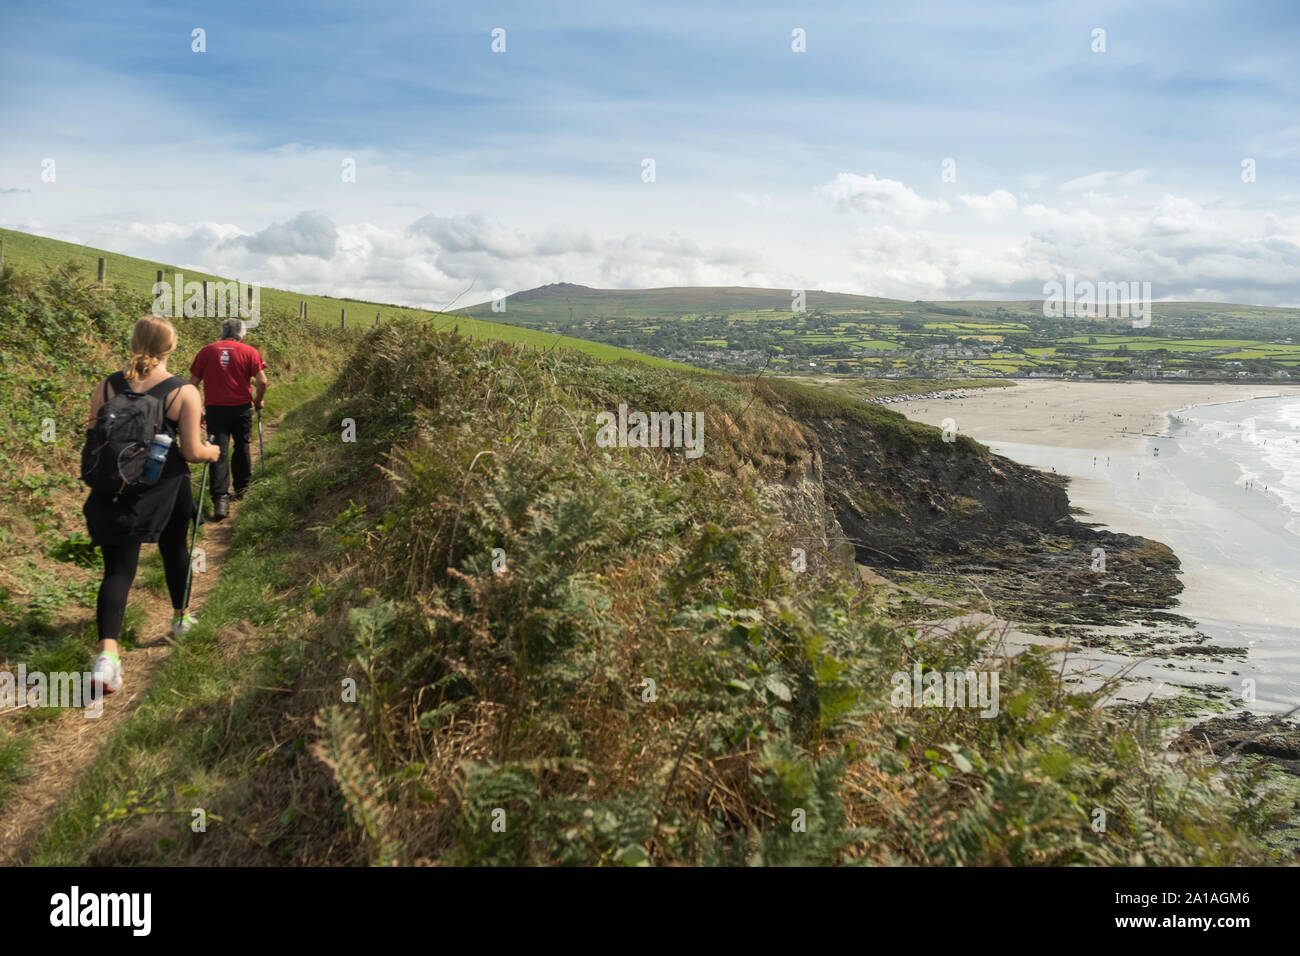 Viajes y Turismo en el REINO UNIDO: la gente caminando a lo largo de la ruta de la costa Penbrokeshire cerca de Newport (Trefdraeth) Pembrokeshire (Gales occidental, agosto de 2019 Foto de stock